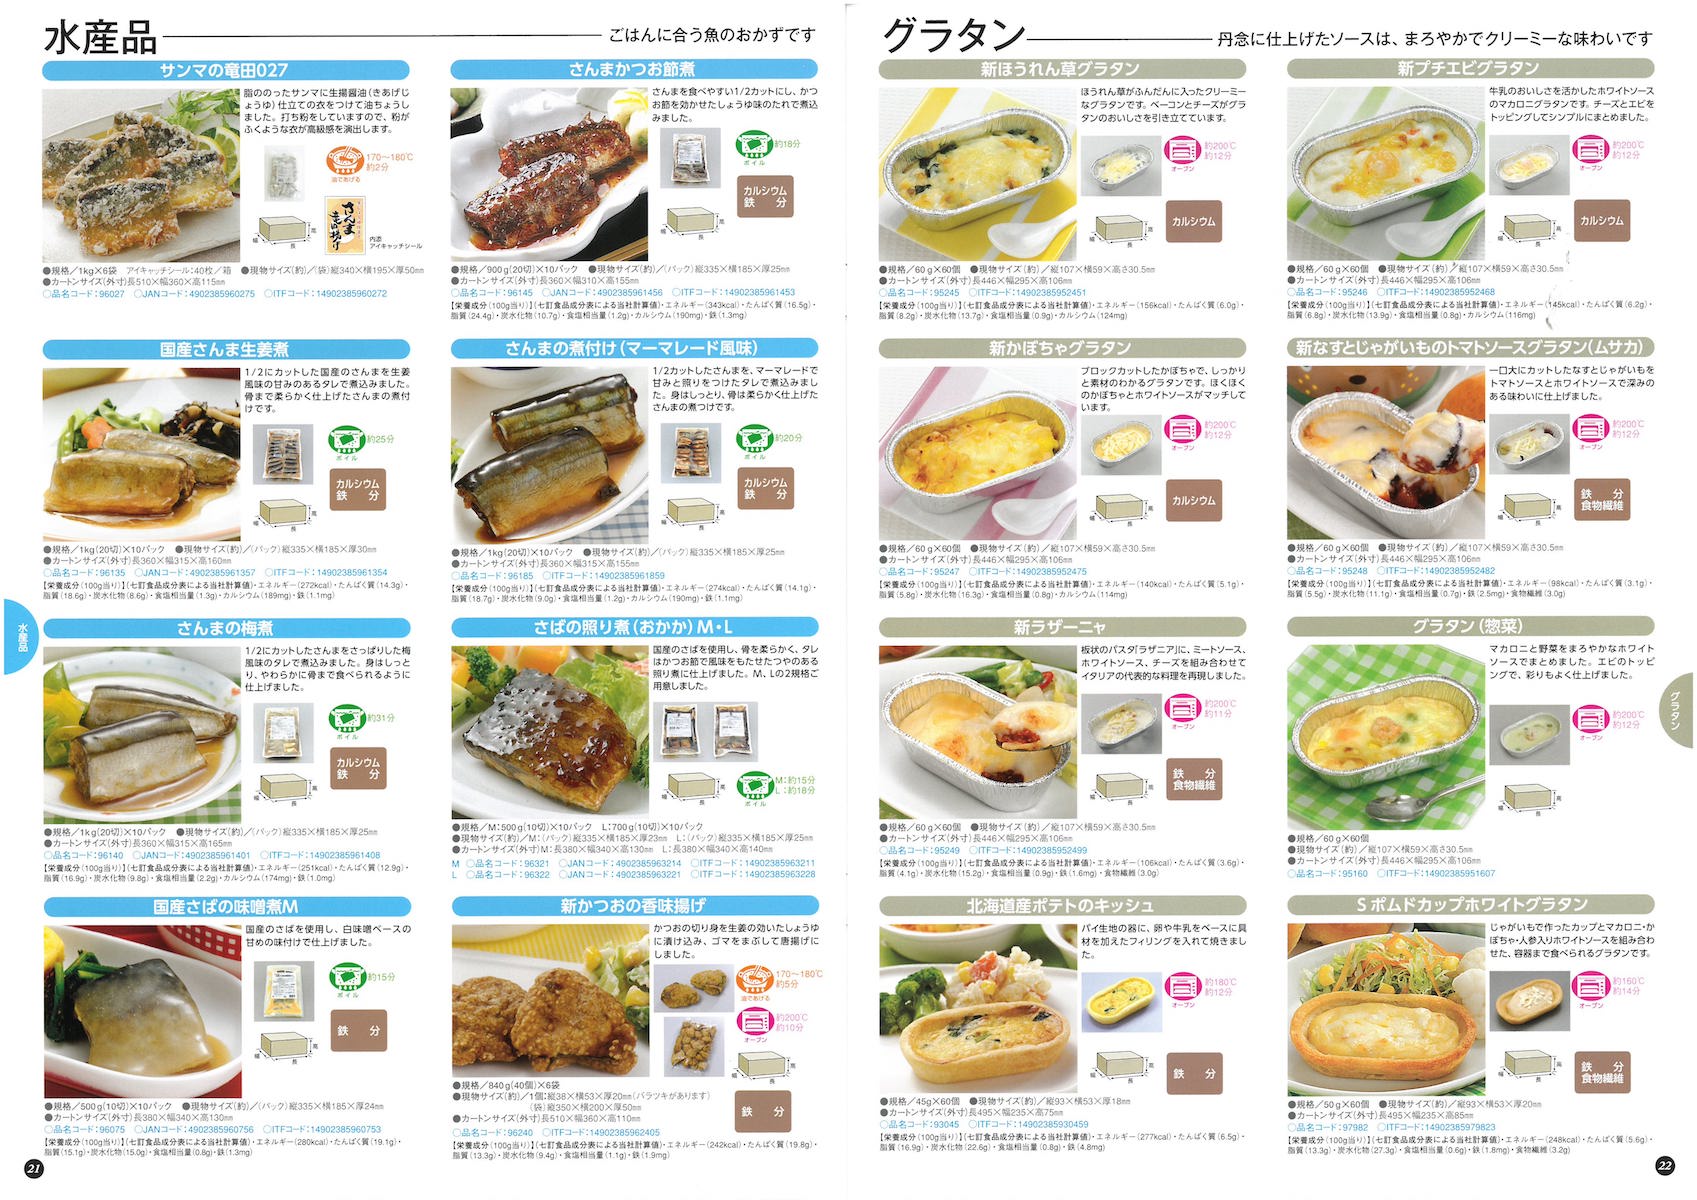 日東ベスト2018業務用食品総合カタログ